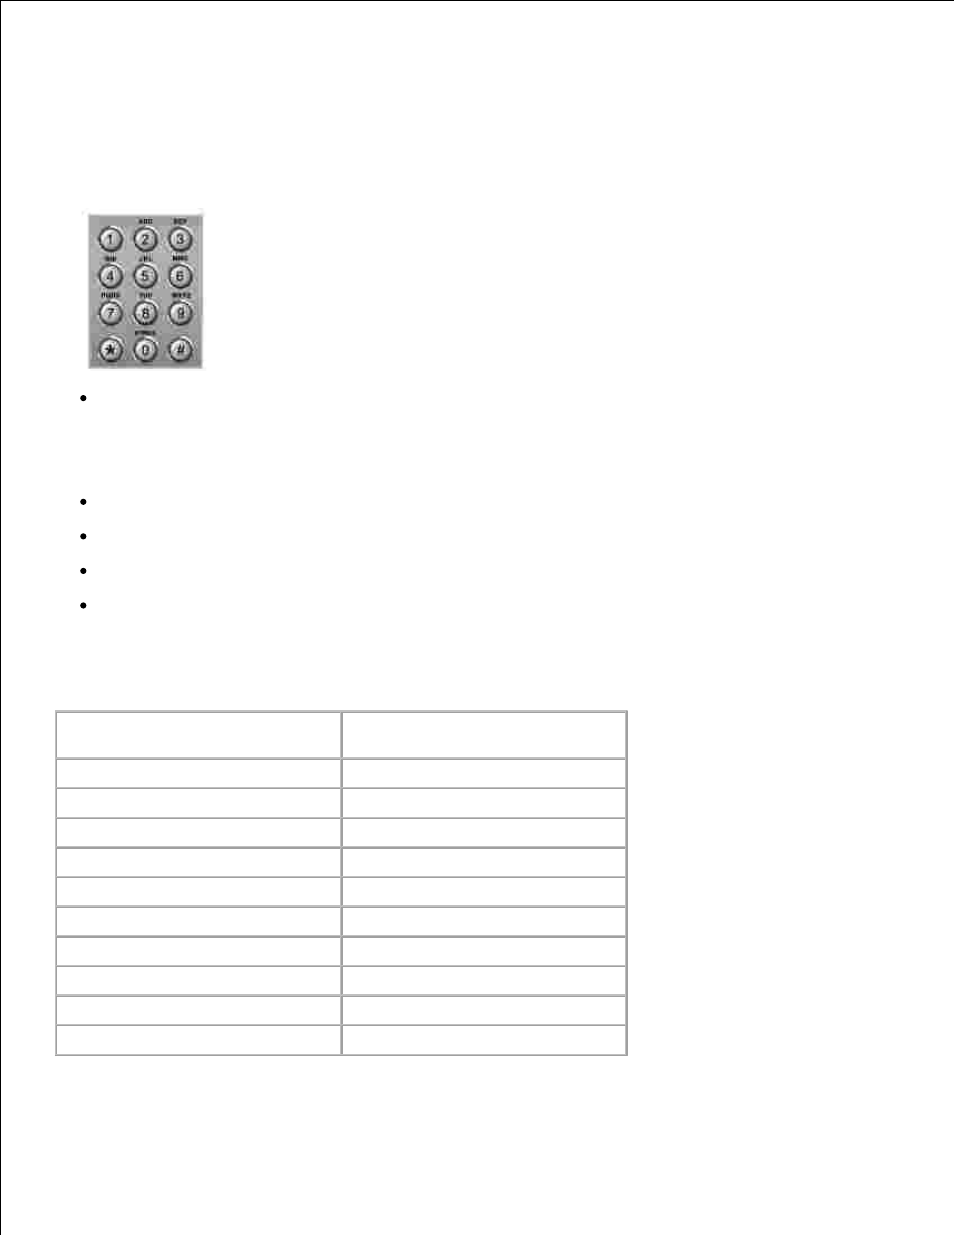 Letras y números del teclado | Dell 1600n Multifunction Mono Laser Printer Manual del usuario | Página 98 / 193